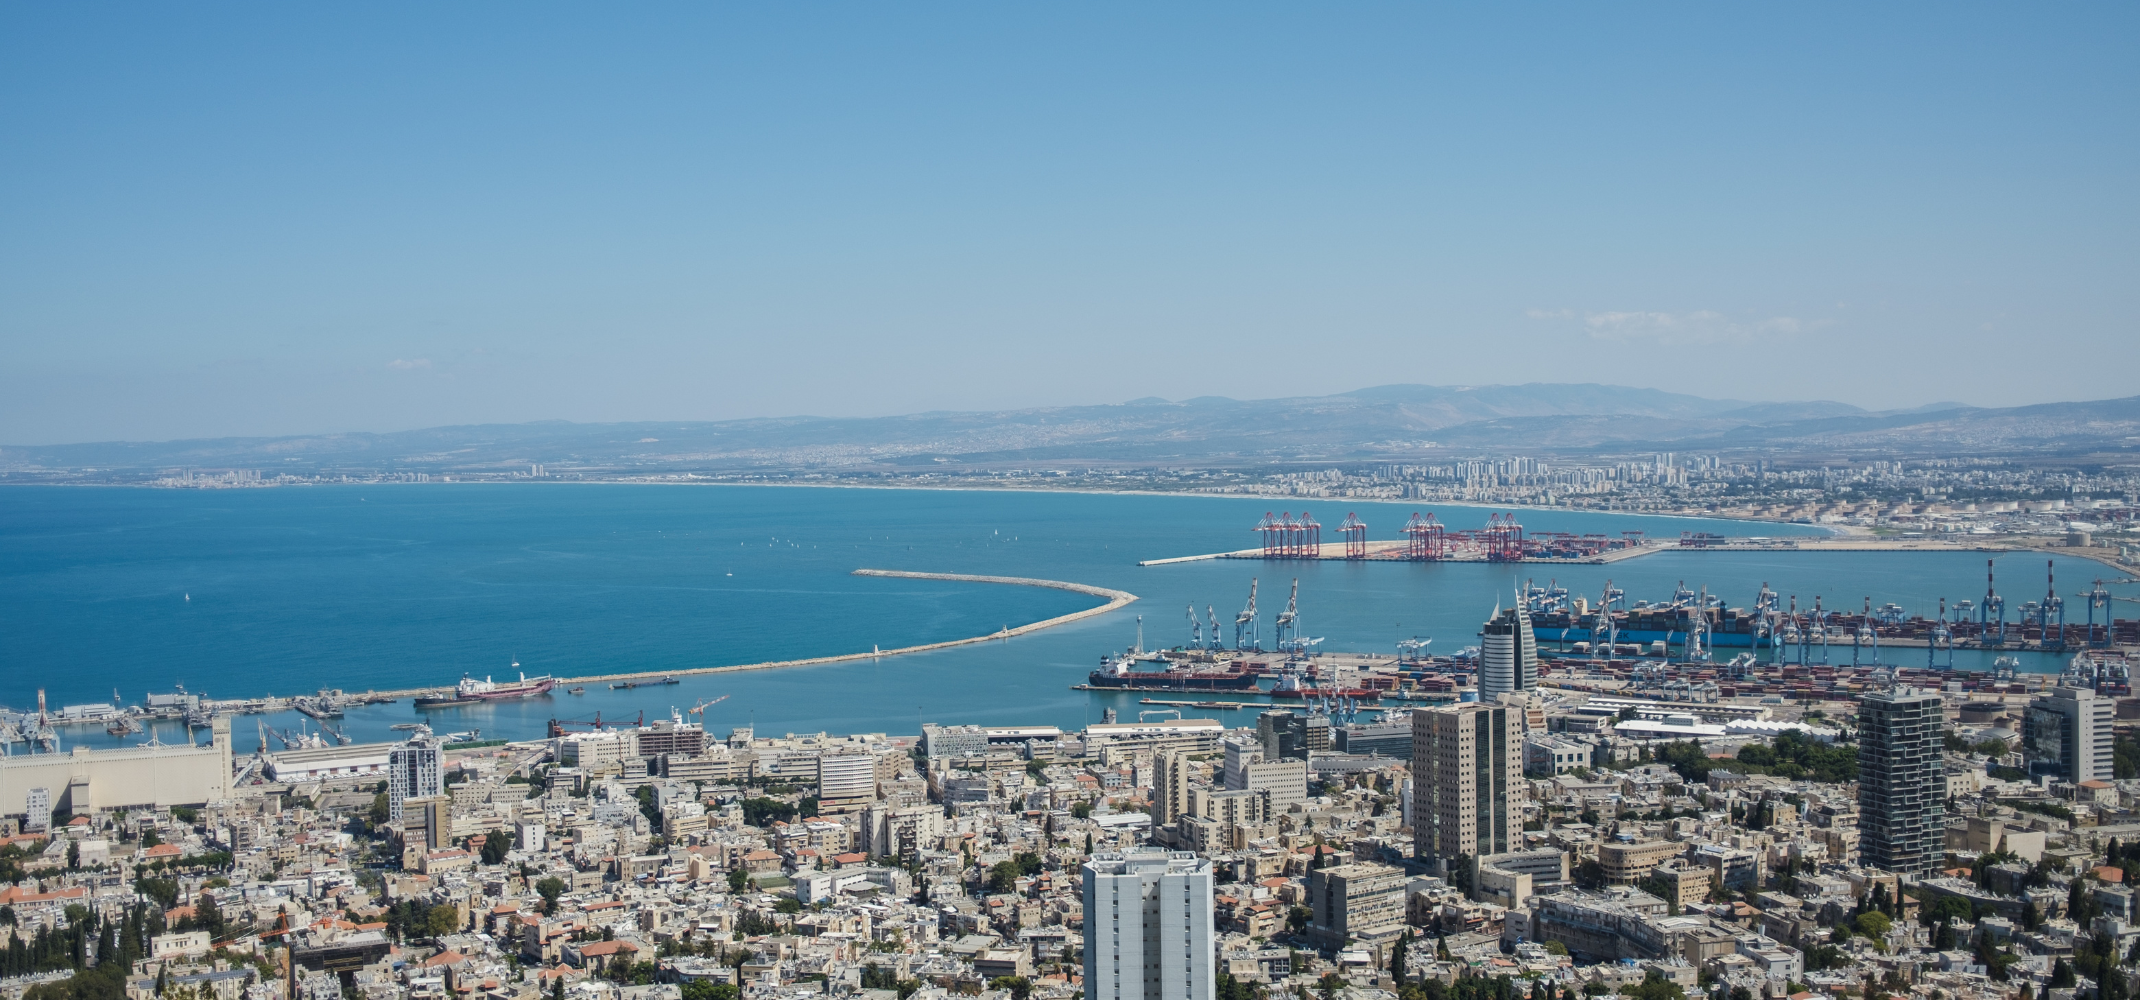 Haifa Port in Israel